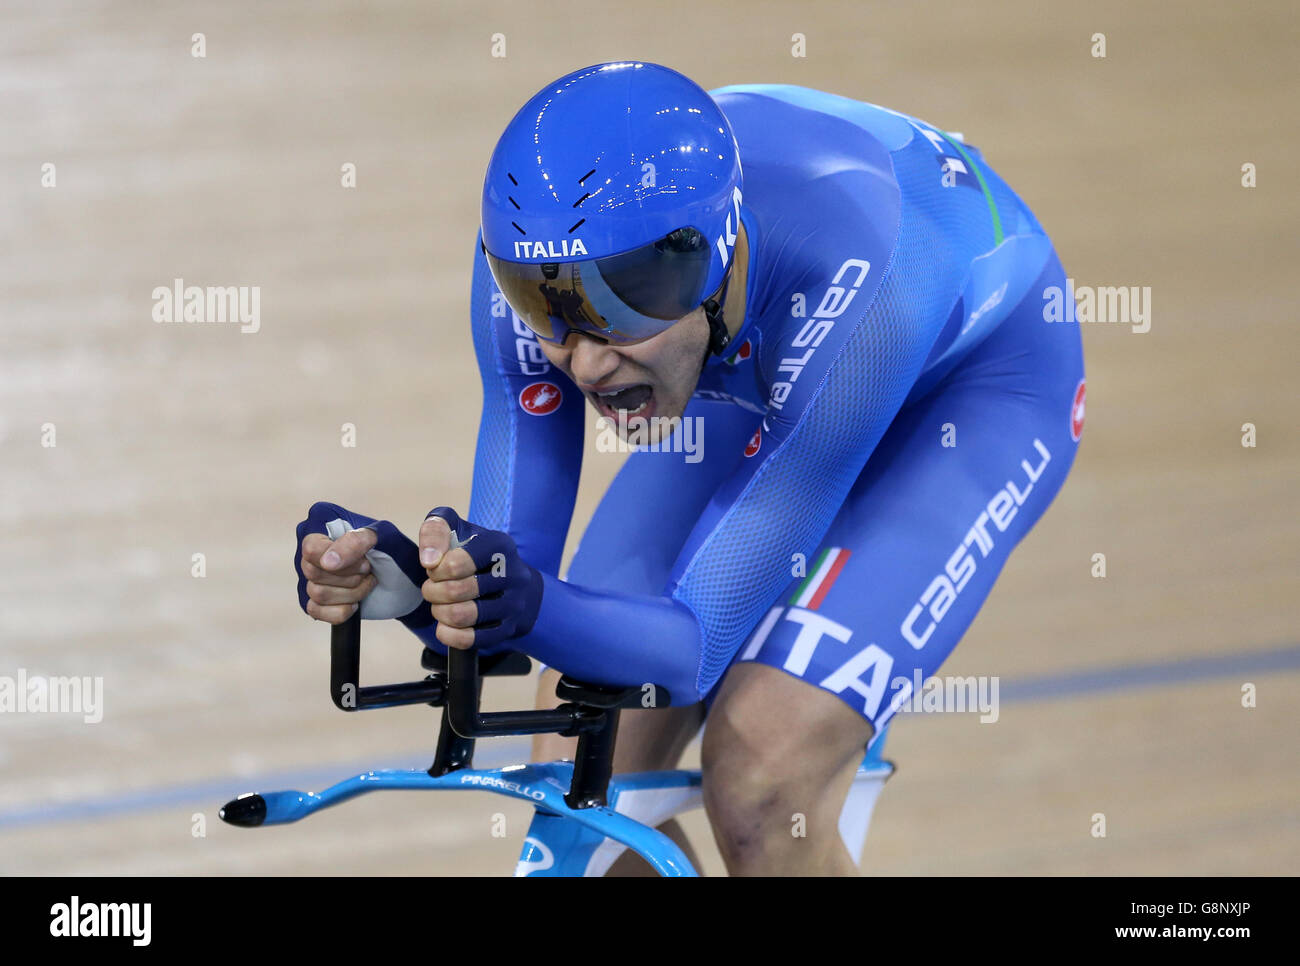 Filippo Ganna in Italia compete nella finale maschile individuale della Pursuit durante il terzo giorno dei Campionati mondiali di ciclismo UCI Track a Lee Valley VeloPark, Londra. Foto Stock